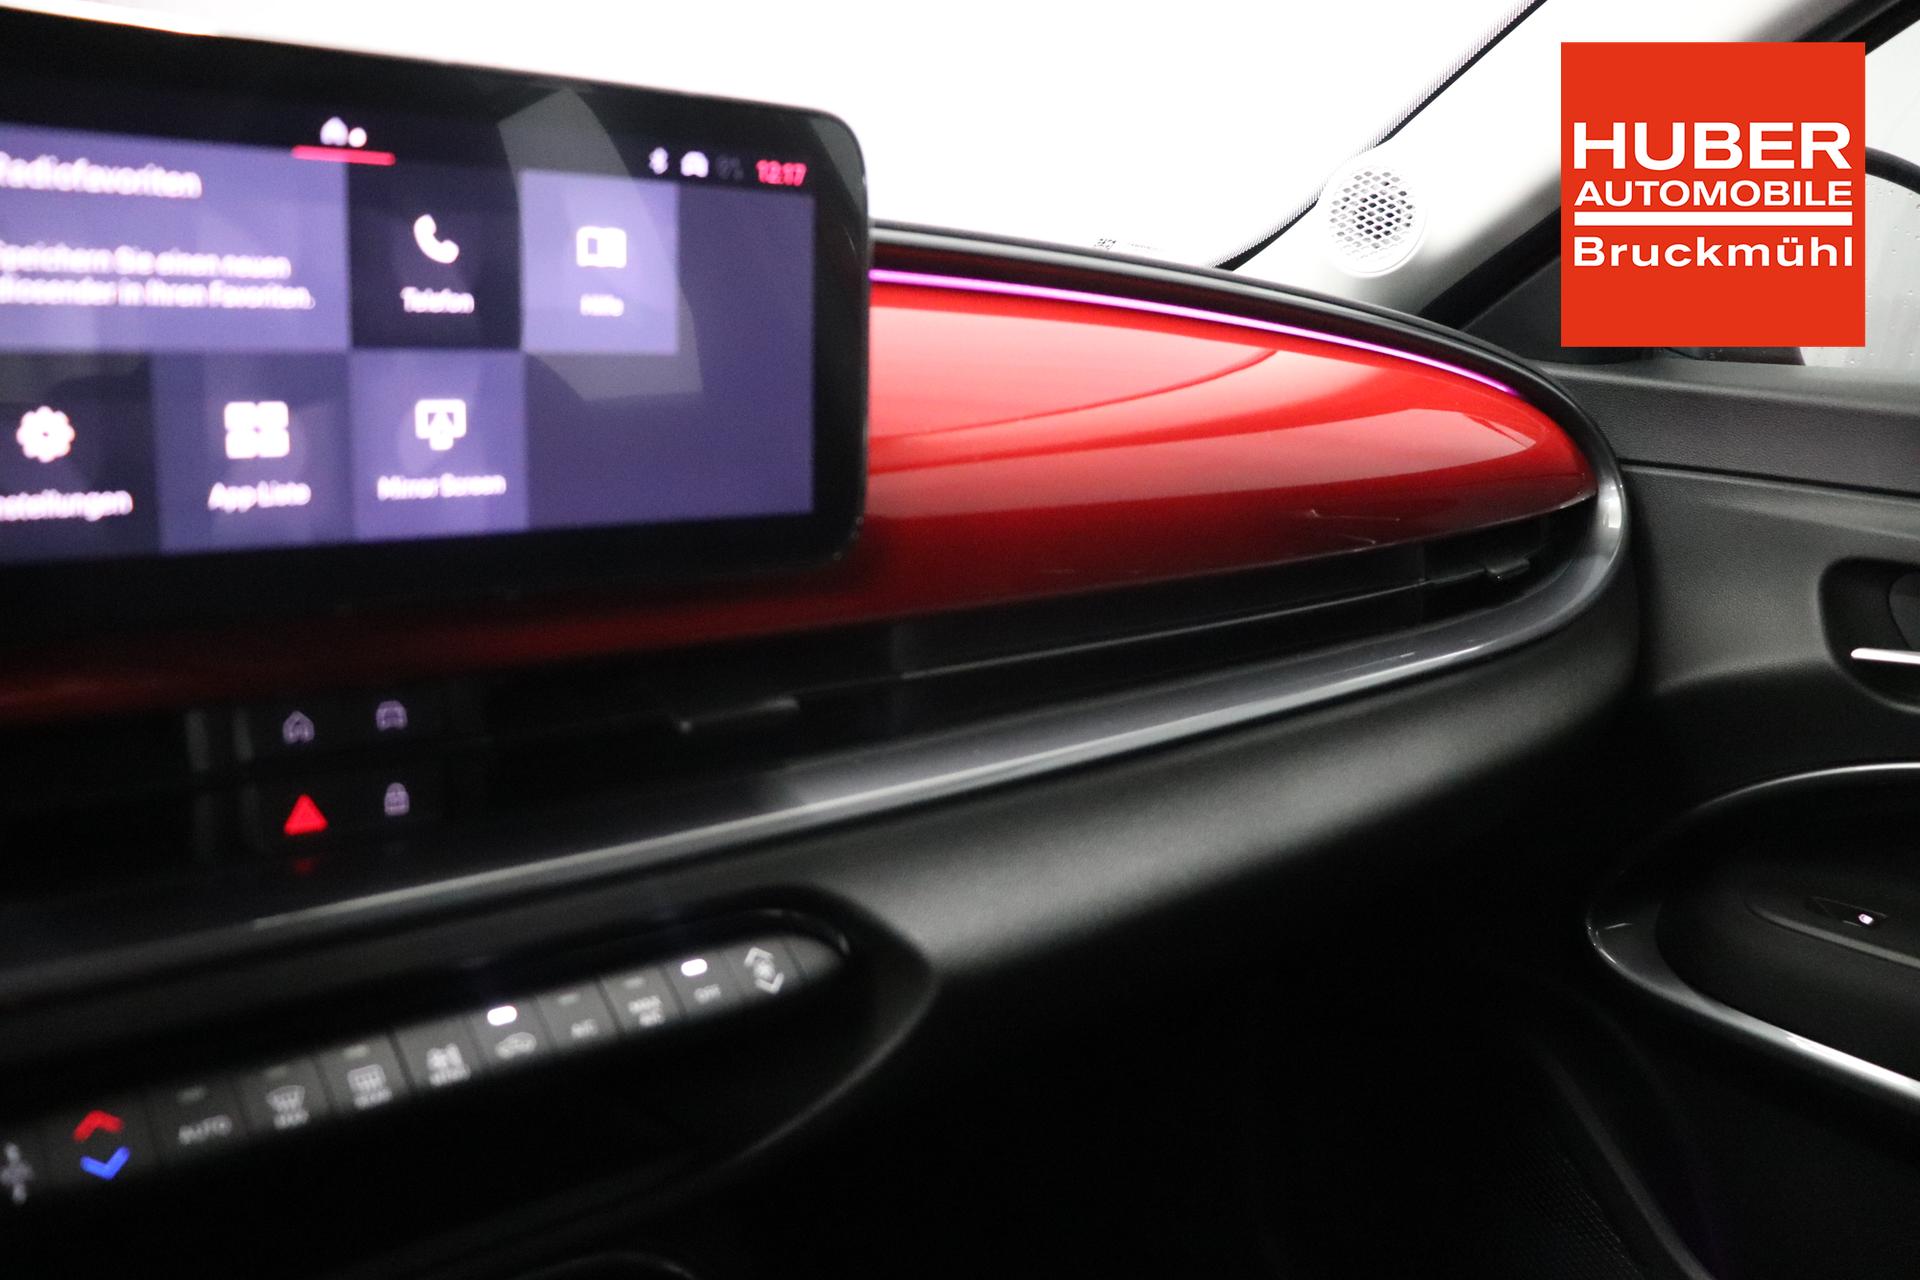 Fiat 600e RED 54kWh 115kW, Klimaautomatik, Ambiente Licht inkl. Color  Therapy, 10,25 Infotainment, AppleCarPlay&Android Auto, Parksensoren  hinten, Spurhalteassistent, LED Scheinwerfer, Nebelscheinwerfer, 16  Stahlfelgen, uvm. Lagerfahrzeug Elektro